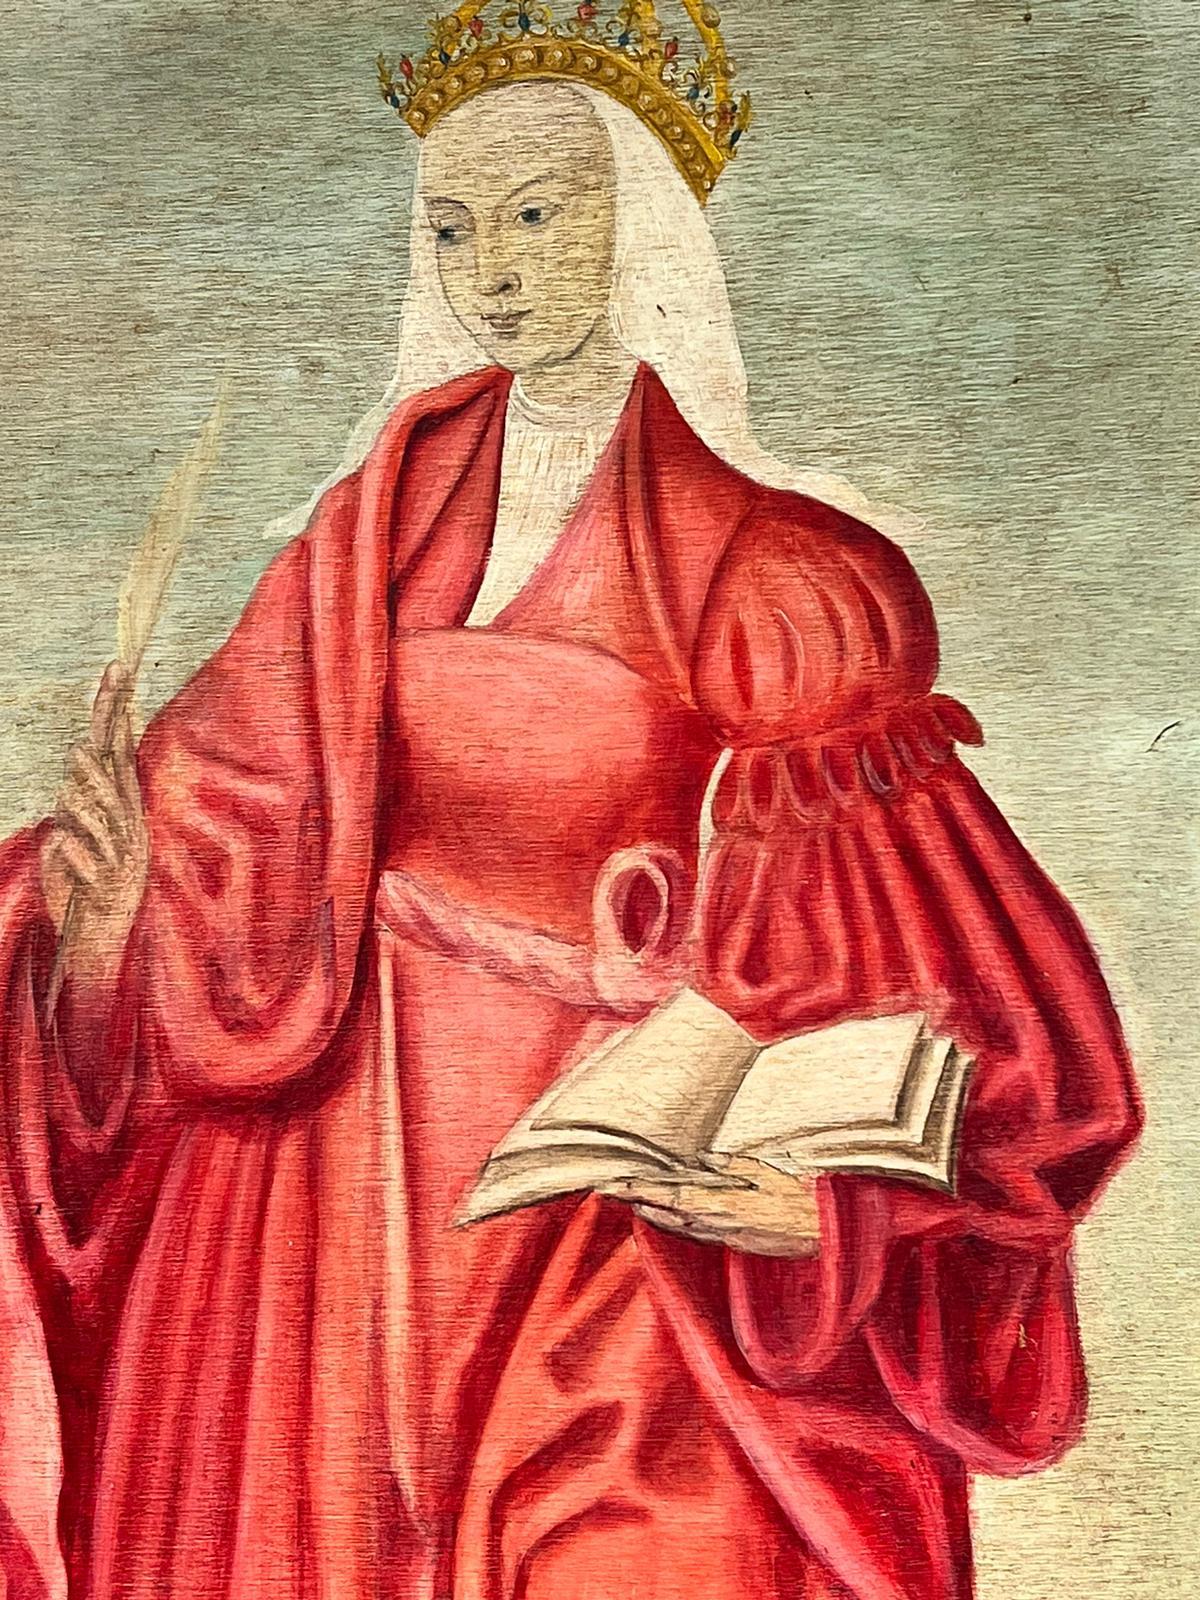 Portrait de Sainte-Catherine de style Renaissance médiévale debout dans un paysage à l'huile - Painting de Renaissance style 